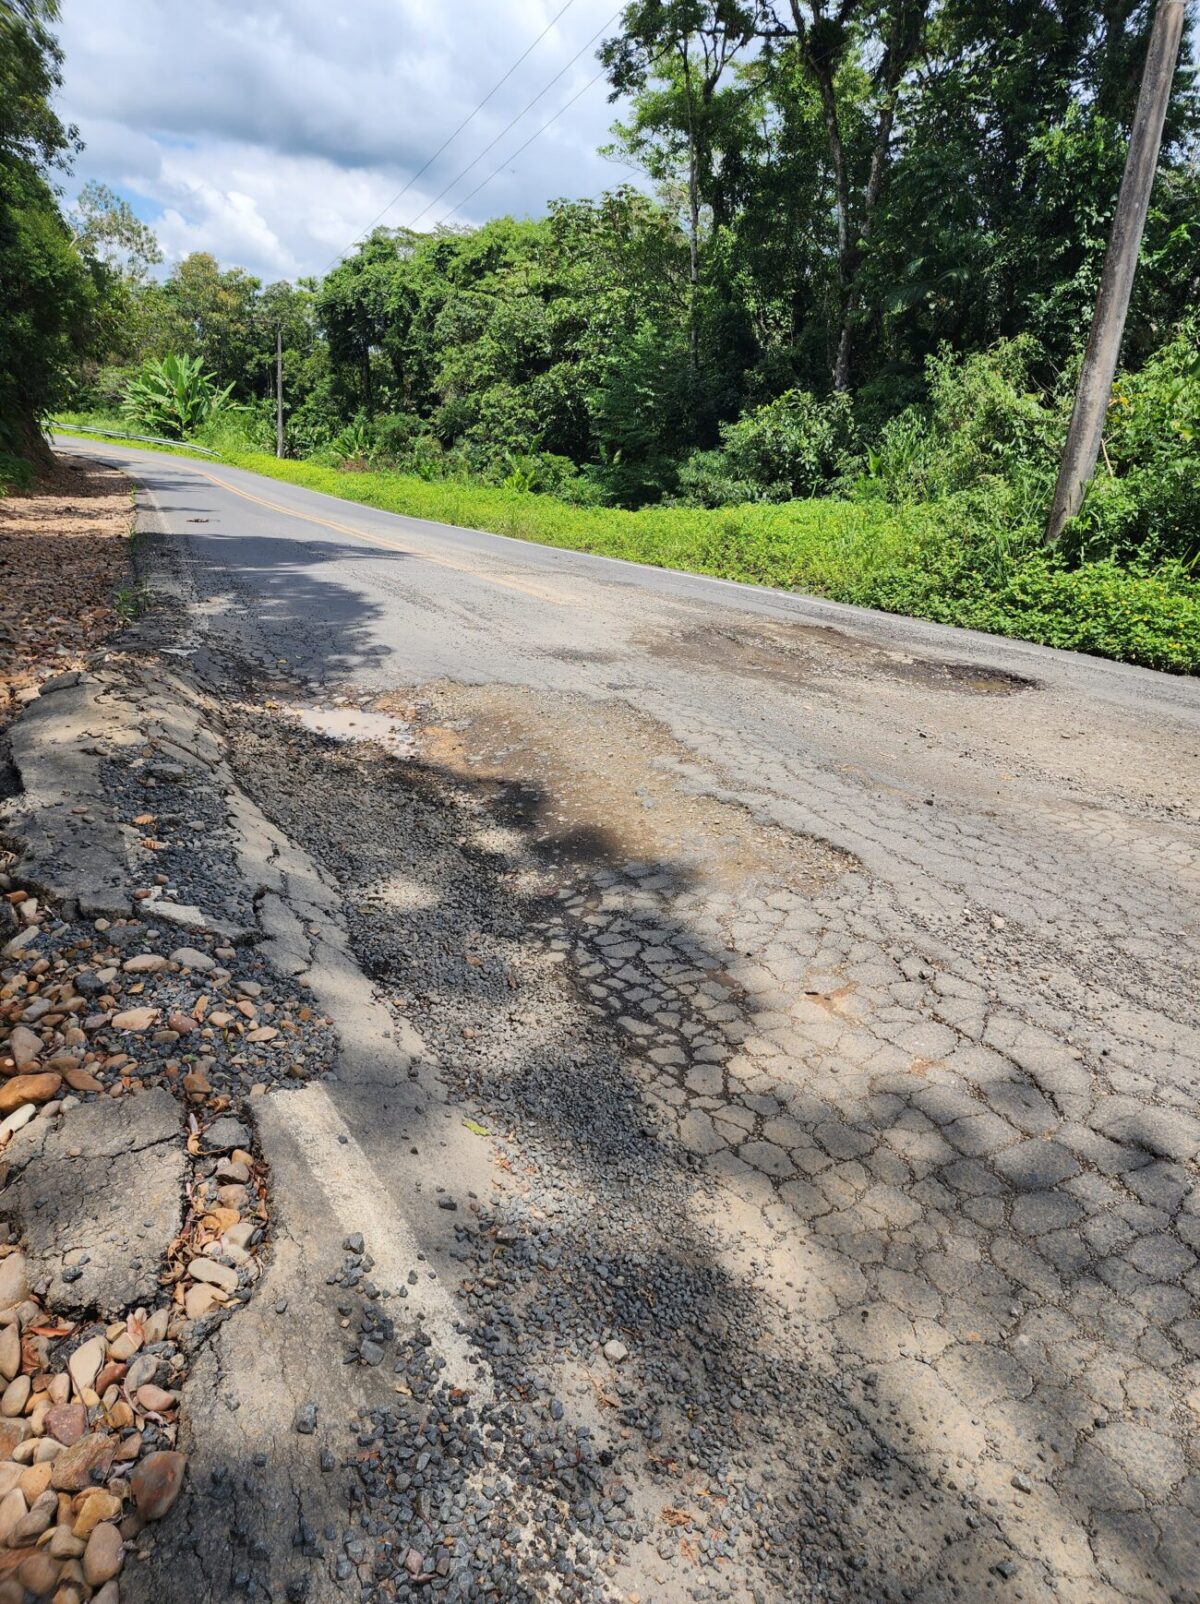 Buracos no asfalto do entorno da Barragem colocam em risco usuários da via